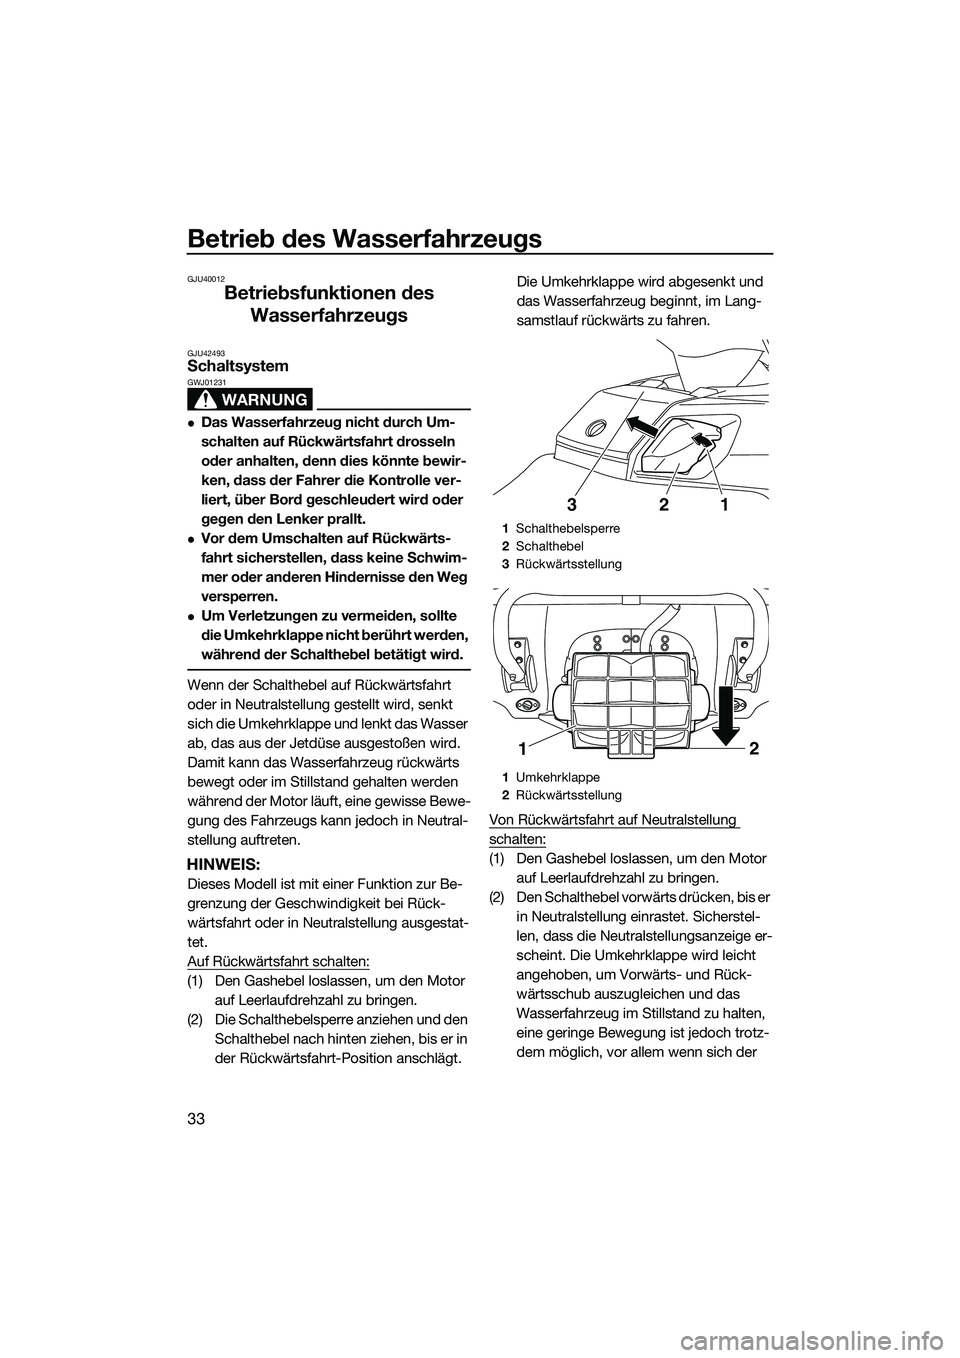 YAMAHA FX HO 2014  Betriebsanleitungen (in German) Betrieb des Wasserfahrzeugs
33
GJU40012
Betriebsfunktionen des Wasserfahrzeugs
GJU42493Schaltsystem
WARNUNG
GWJ01231
Das Wasserfahrzeug nicht durch Um-
schalten auf Rückwärtsfahrt drosseln 
oder 